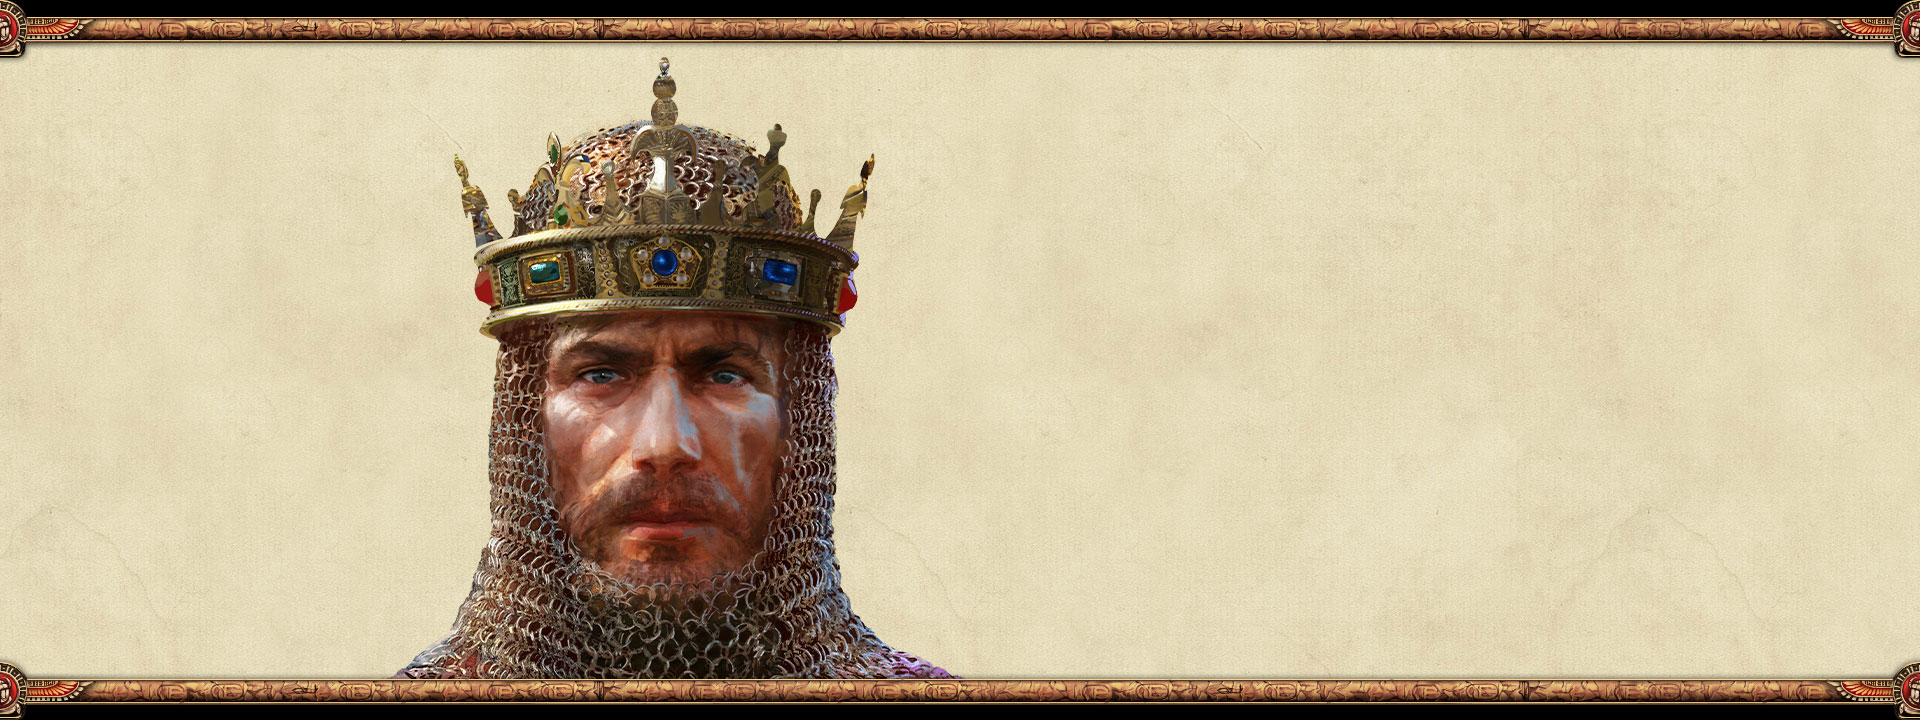 Le souverain d'un empire portant une cotte de mailles et une couronne